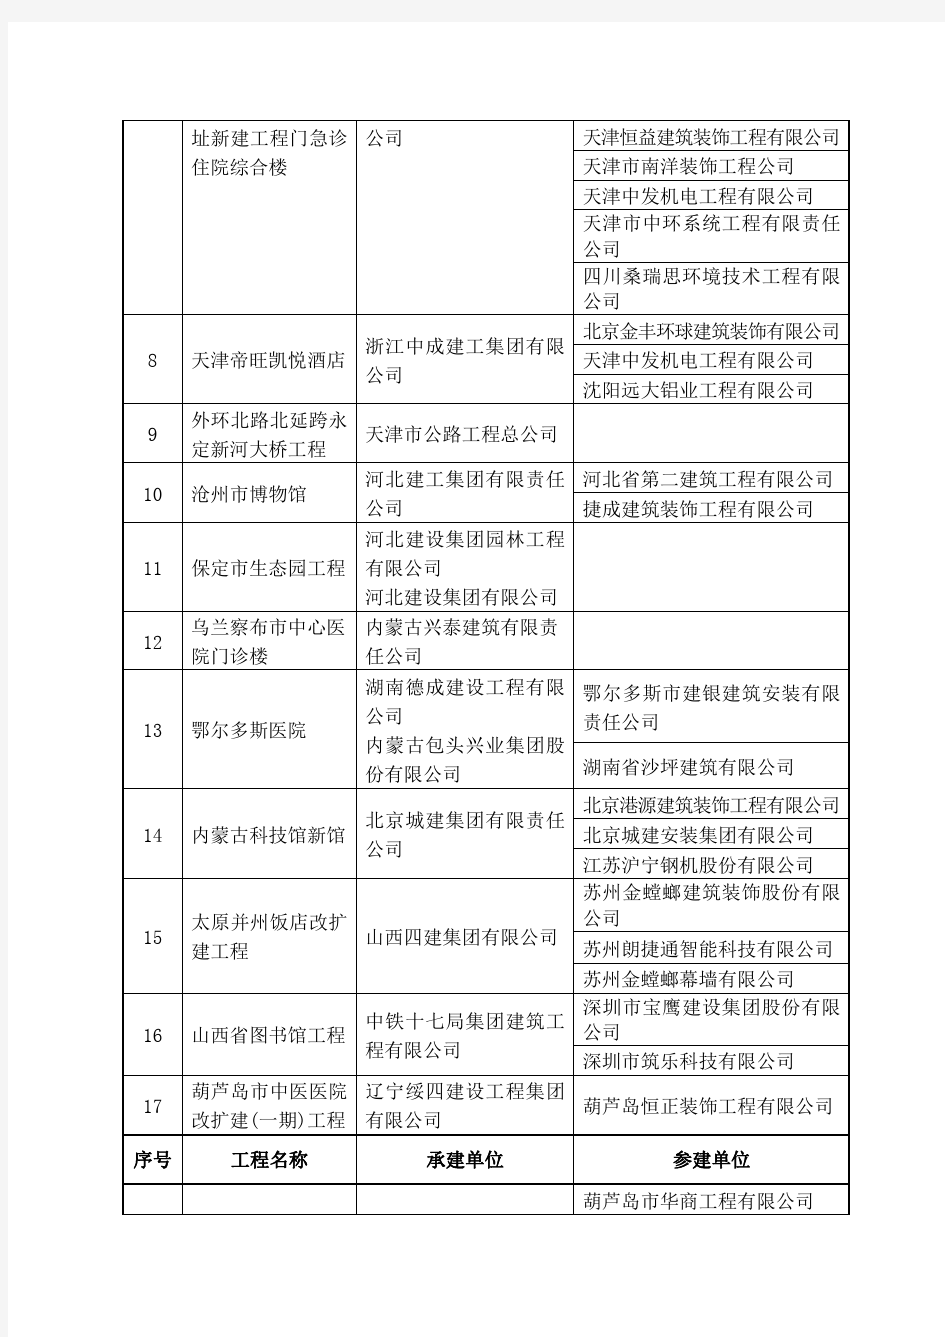 2014～2015年度中国建设工程鲁班奖(国家优质工程)第一批入选名单